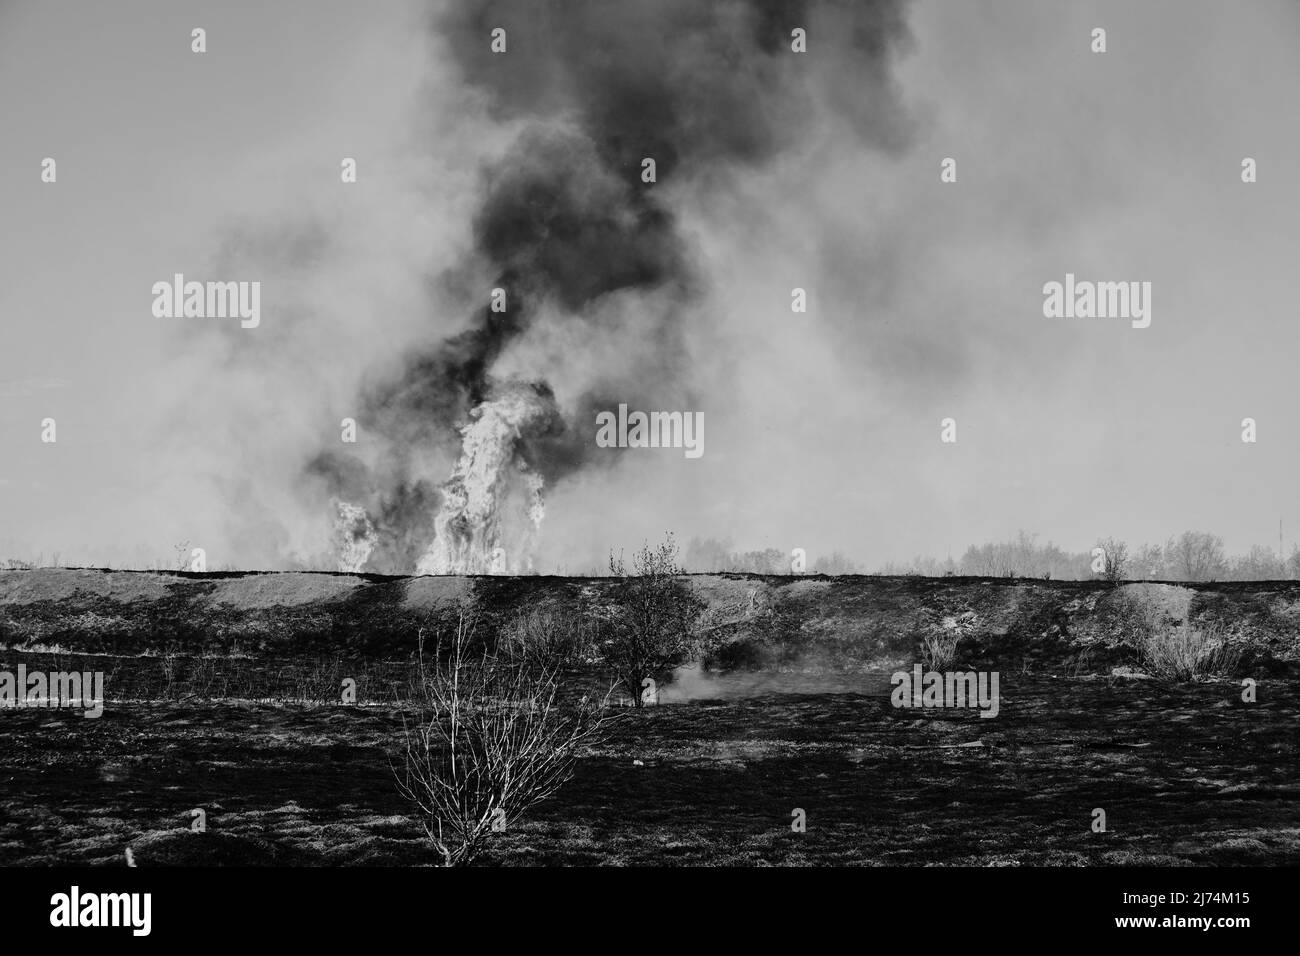 La fumée noire et les flammes sur le fond ont brûlé le champ avec de l'herbe en noir et blanc photo Banque D'Images